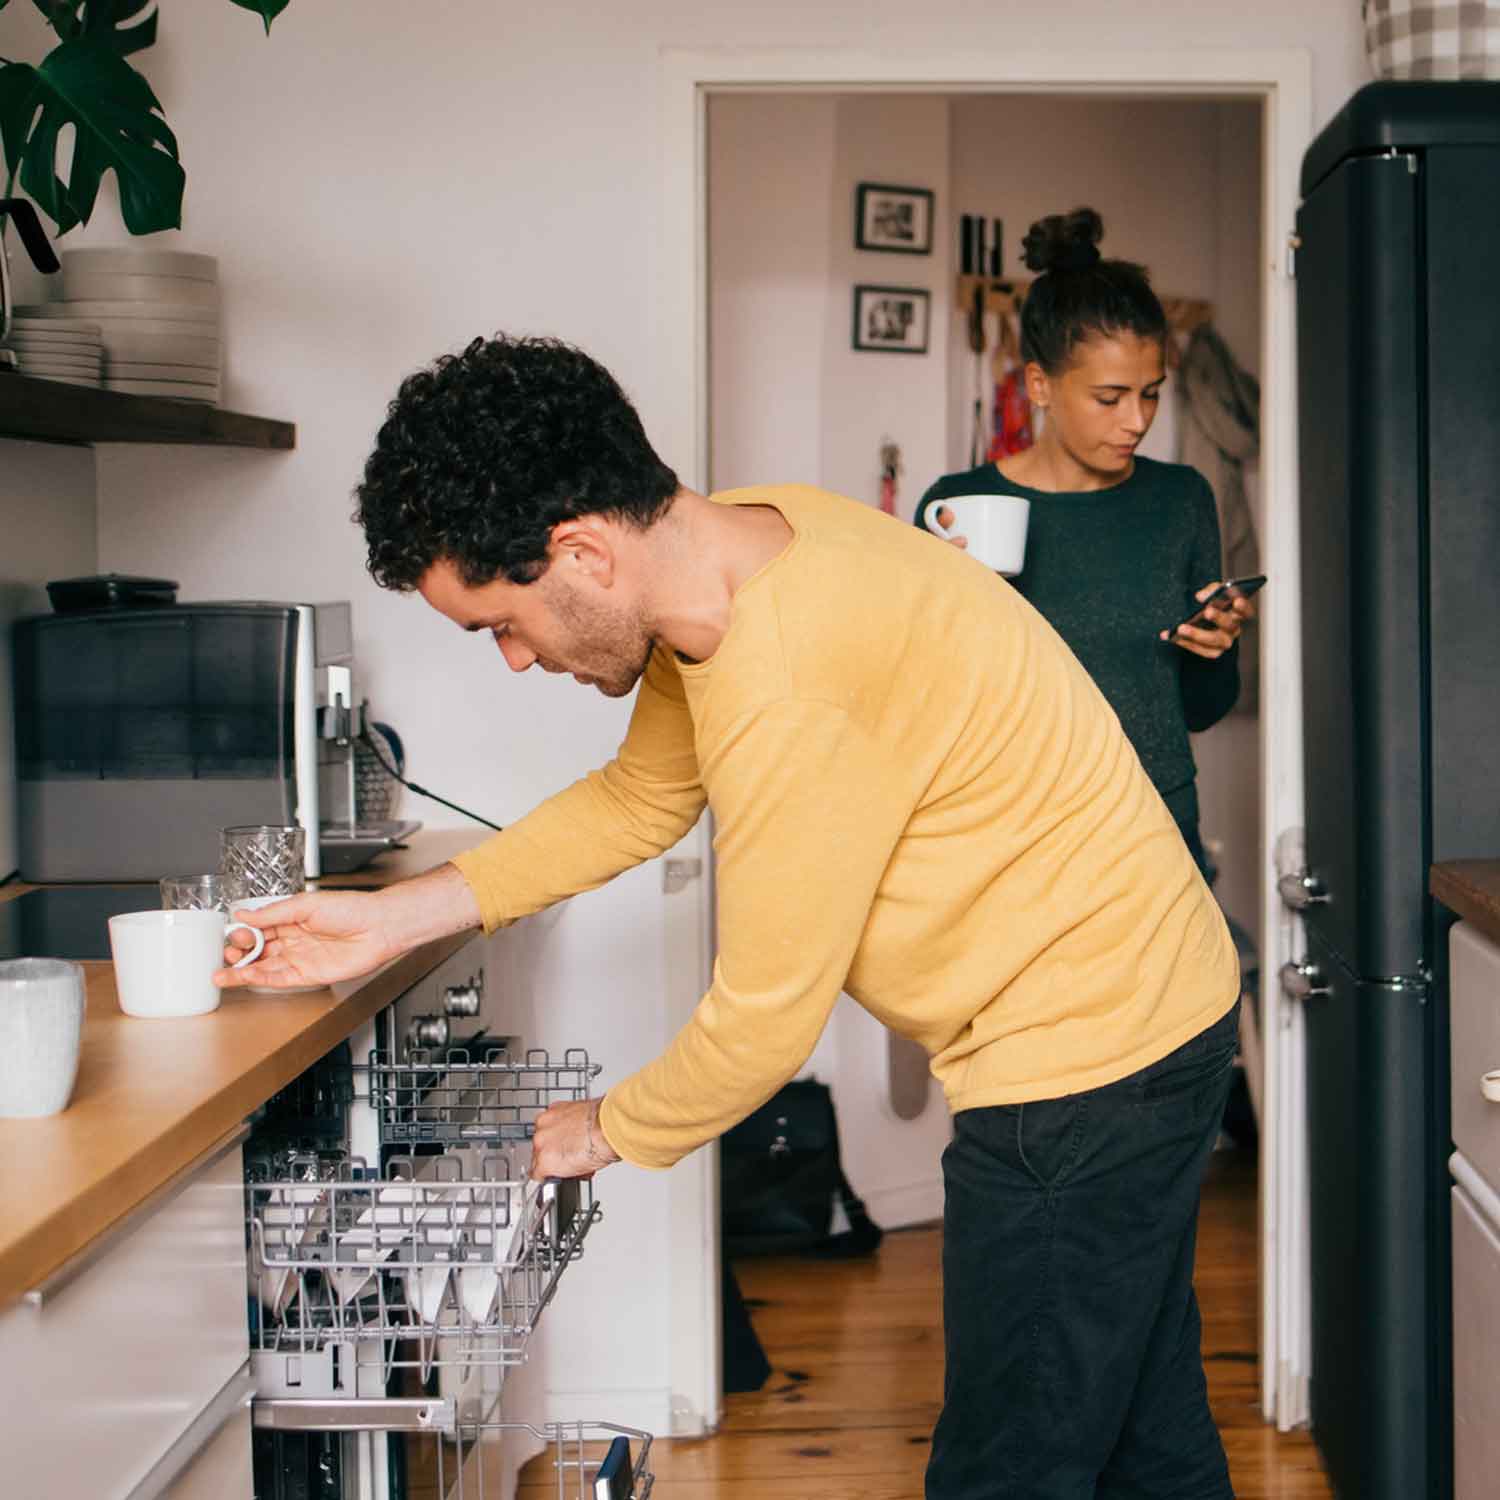 Ett frilansande par där den ena arbetar från hemmet medan den andra städar köket